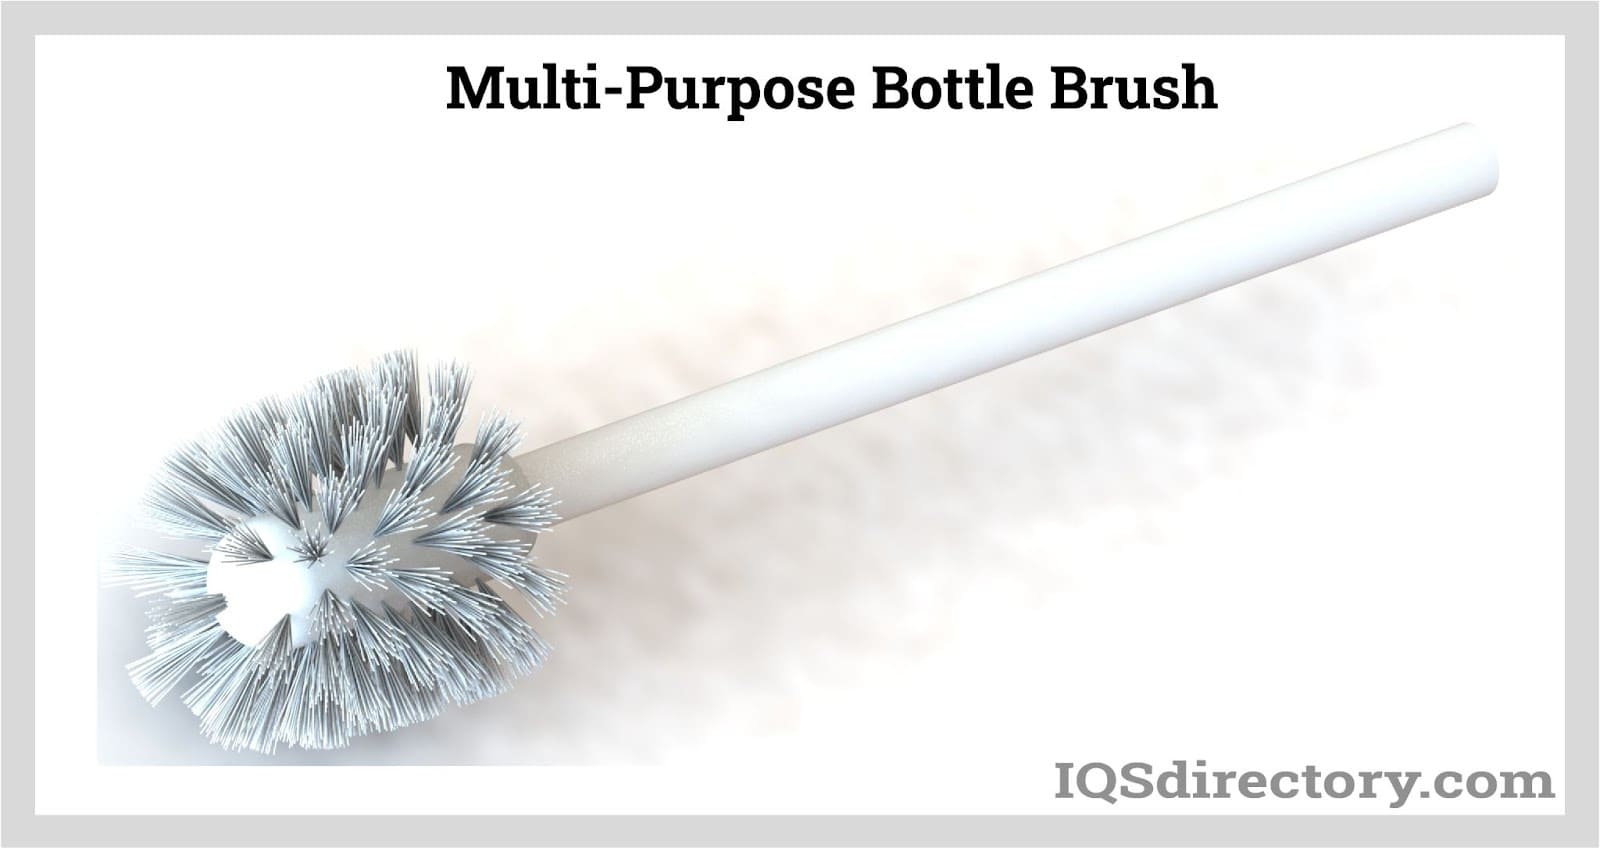 2-In-1 Bottle Brush w/ Built-in Straw Brush